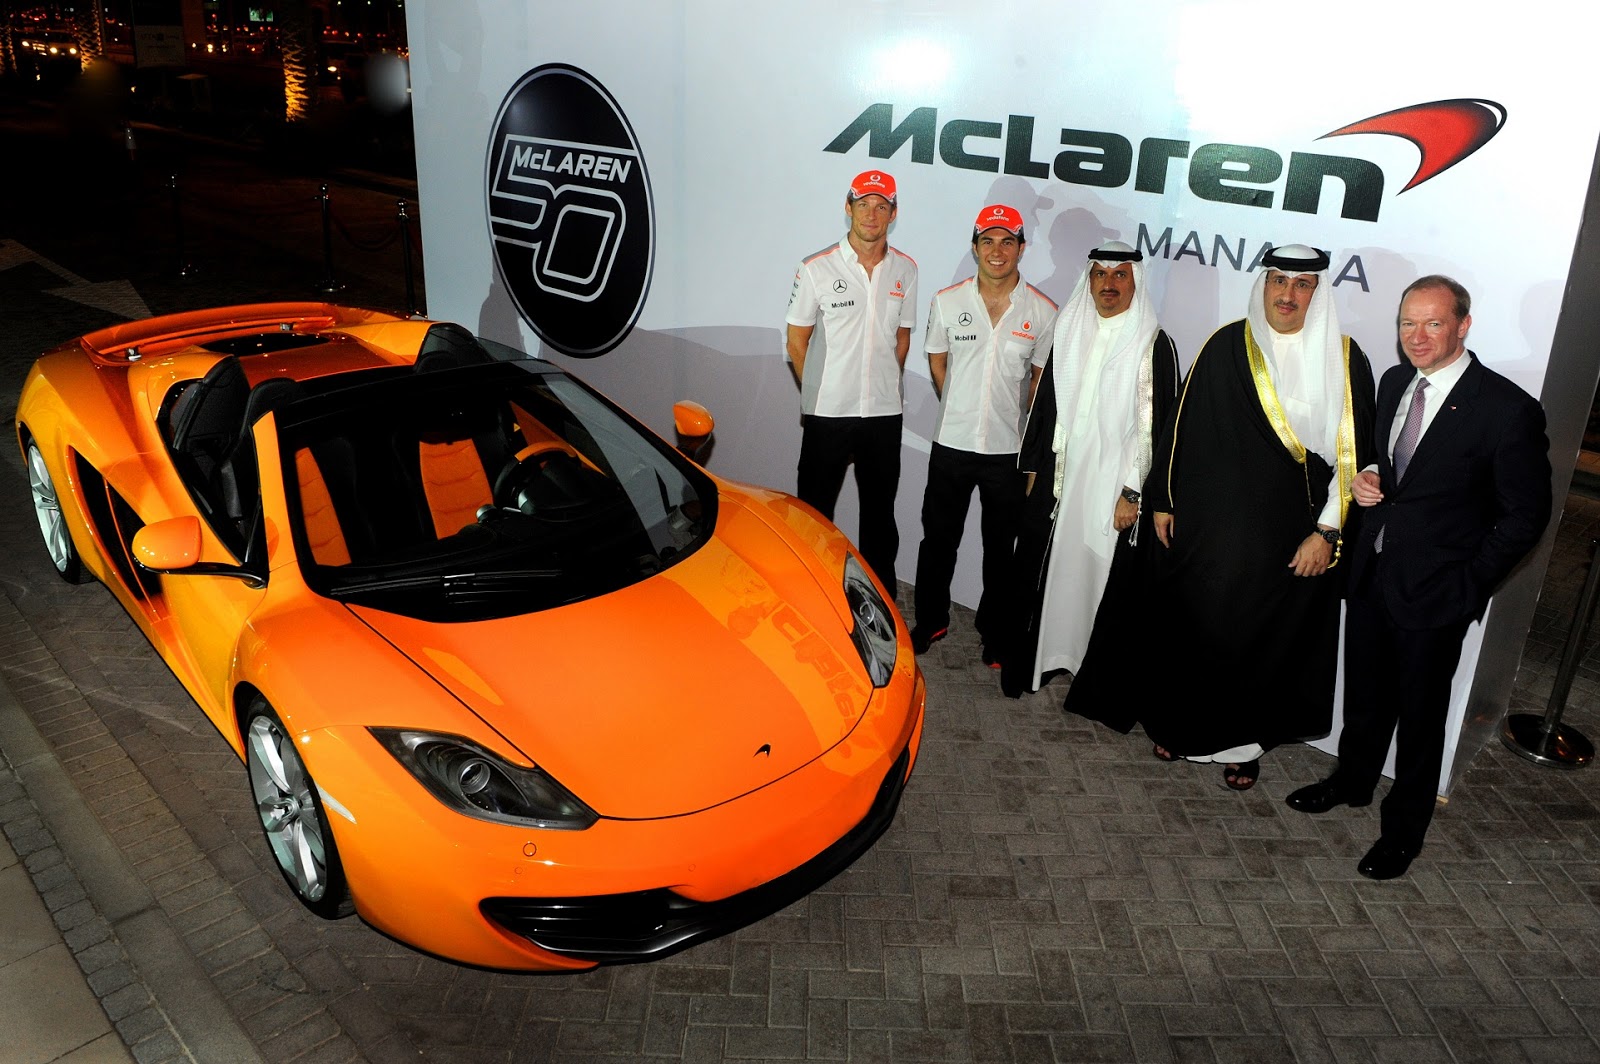 ÙØªÙØ¬Ø© Ø¨Ø­Ø« Ø§ÙØµÙØ± Ø¹Ù âªThe new Bahrain McLaren Towerâ¬â